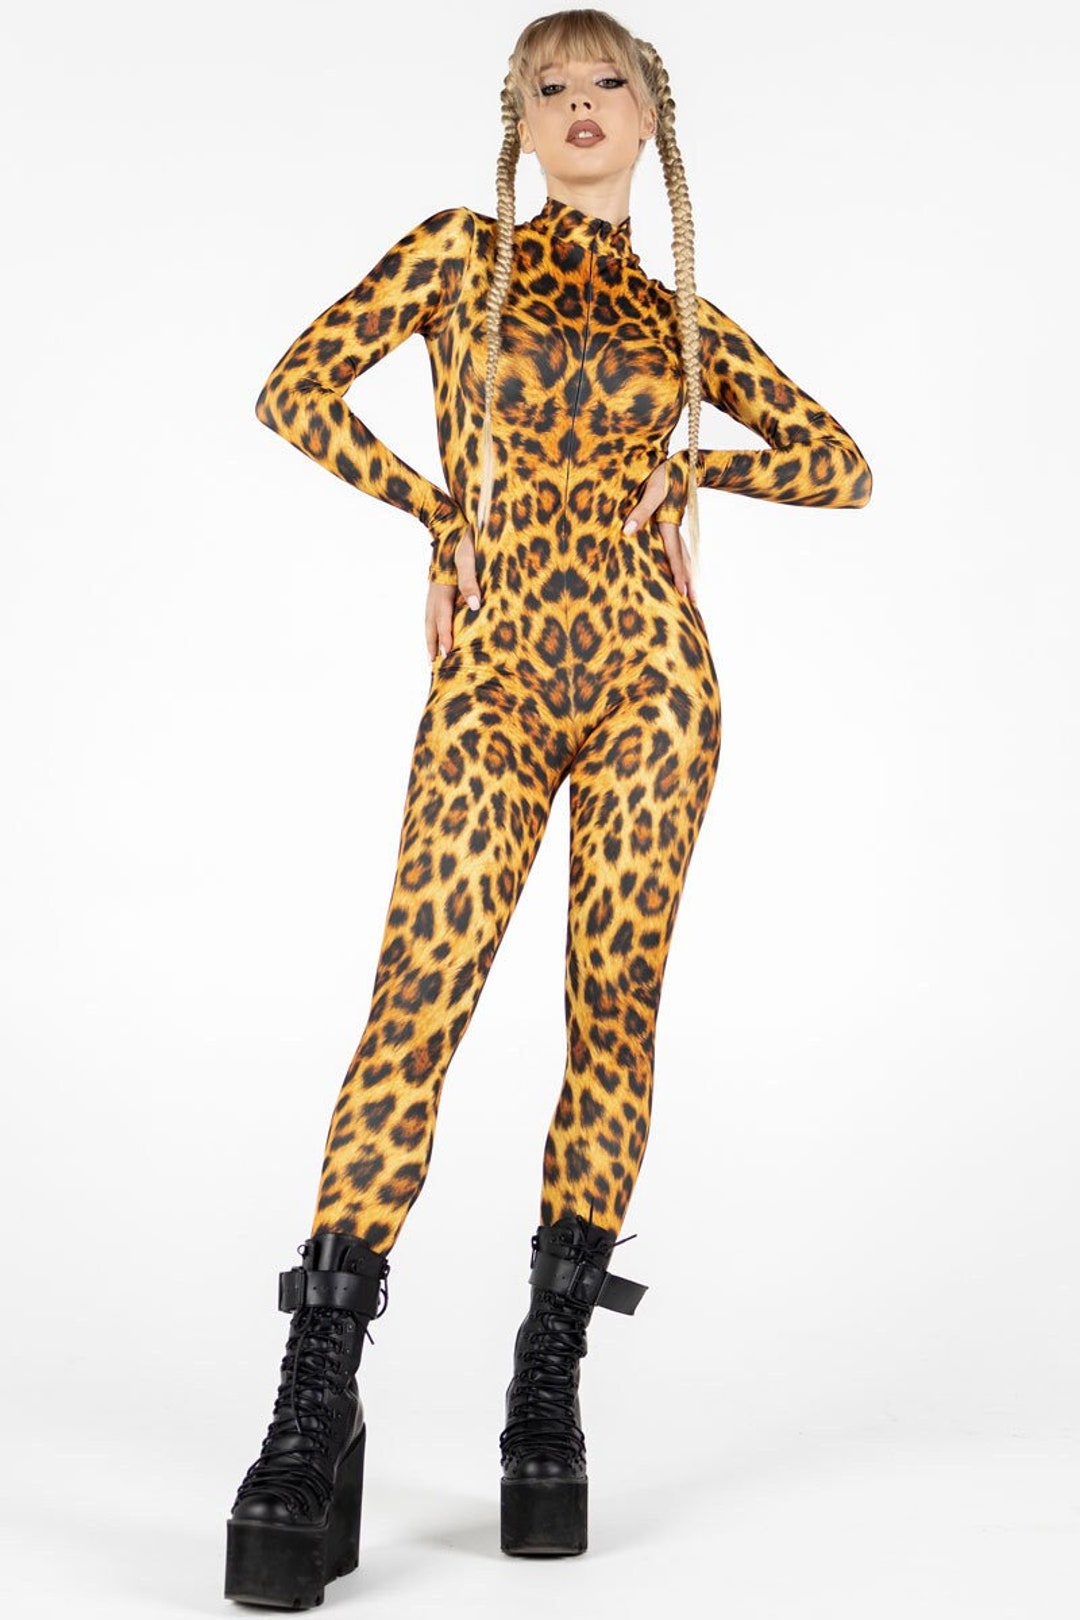 Comprar Disfraz de Leopardo Sexy adulto Unisex